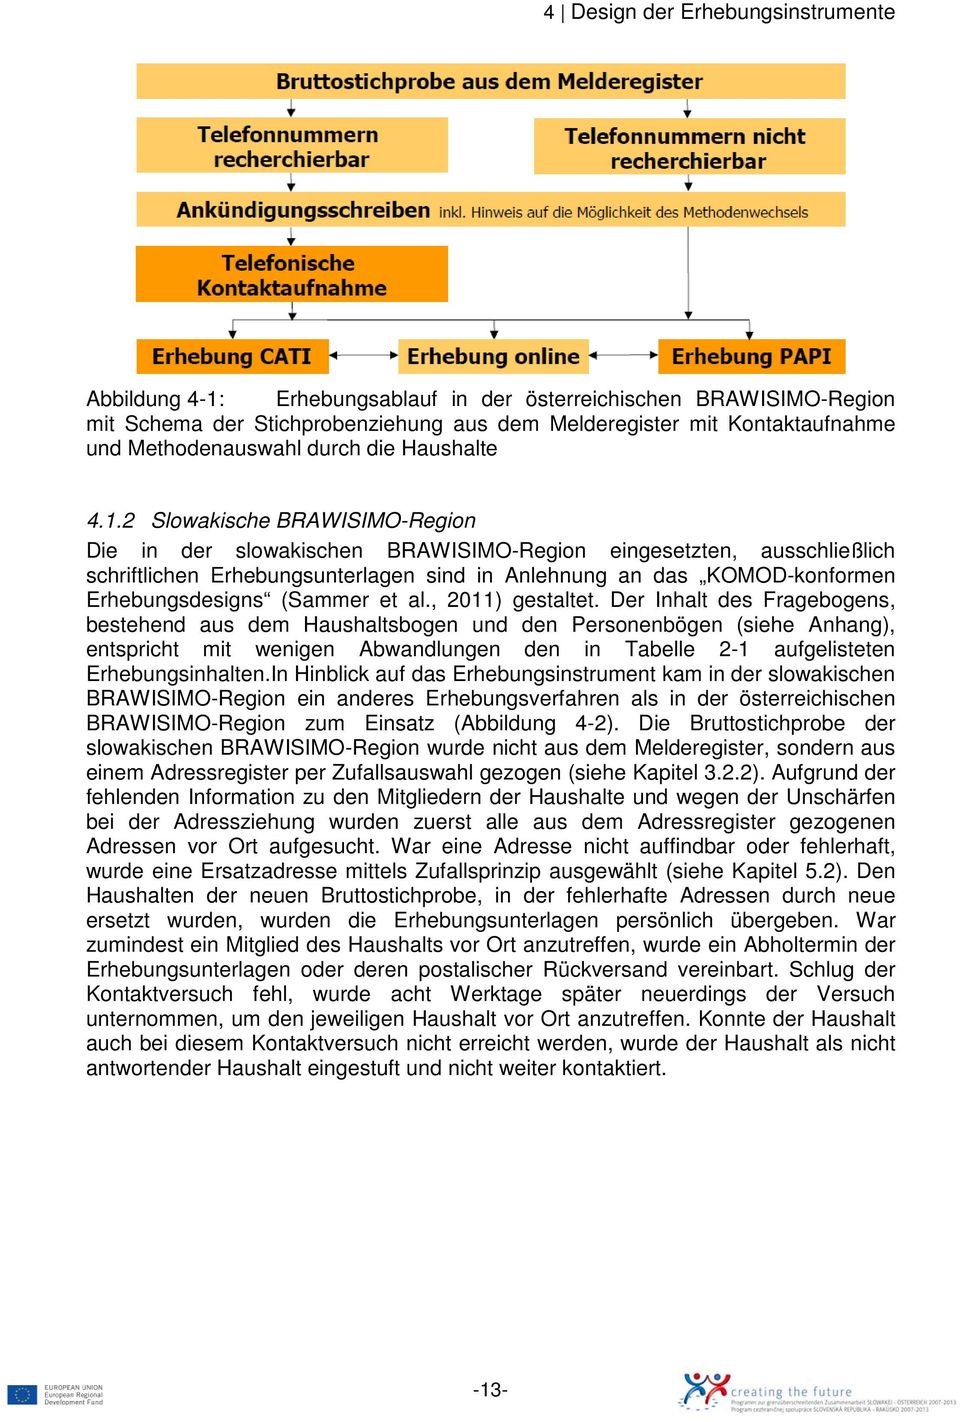 2 Slowakische BRAWISIMO-Region Die in der slowakischen BRAWISIMO-Region eingesetzten, ausschließlich schriftlichen Erhebungsunterlagen sind in Anlehnung an das KOMOD-konformen Erhebungsdesigns